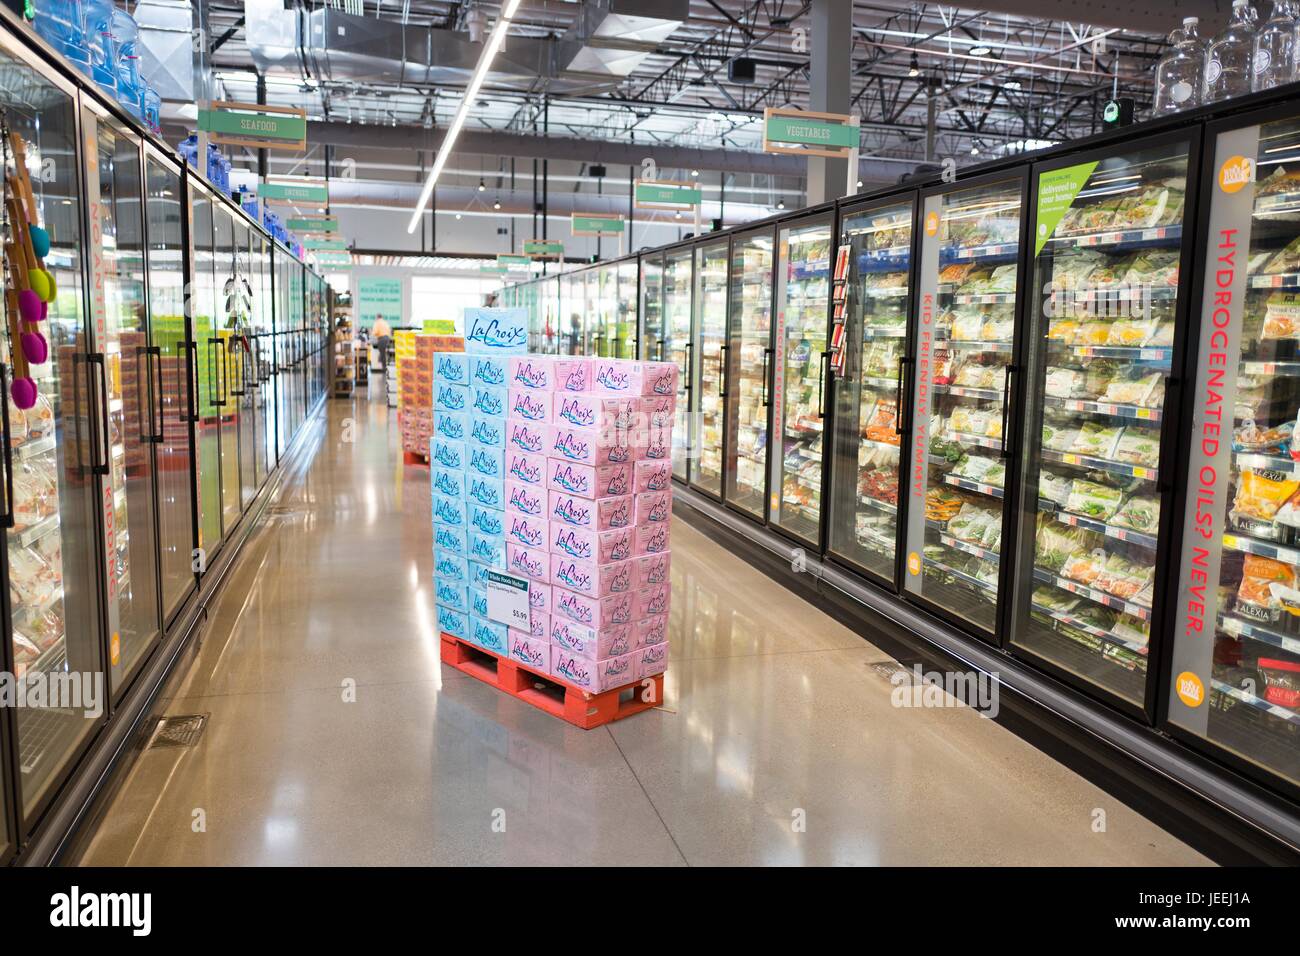 Bebidas y Alimentos refrigerados están en exhibición en el supermercado Whole Foods Market en Dublin, California, 16 de junio de 2017. Foto de stock